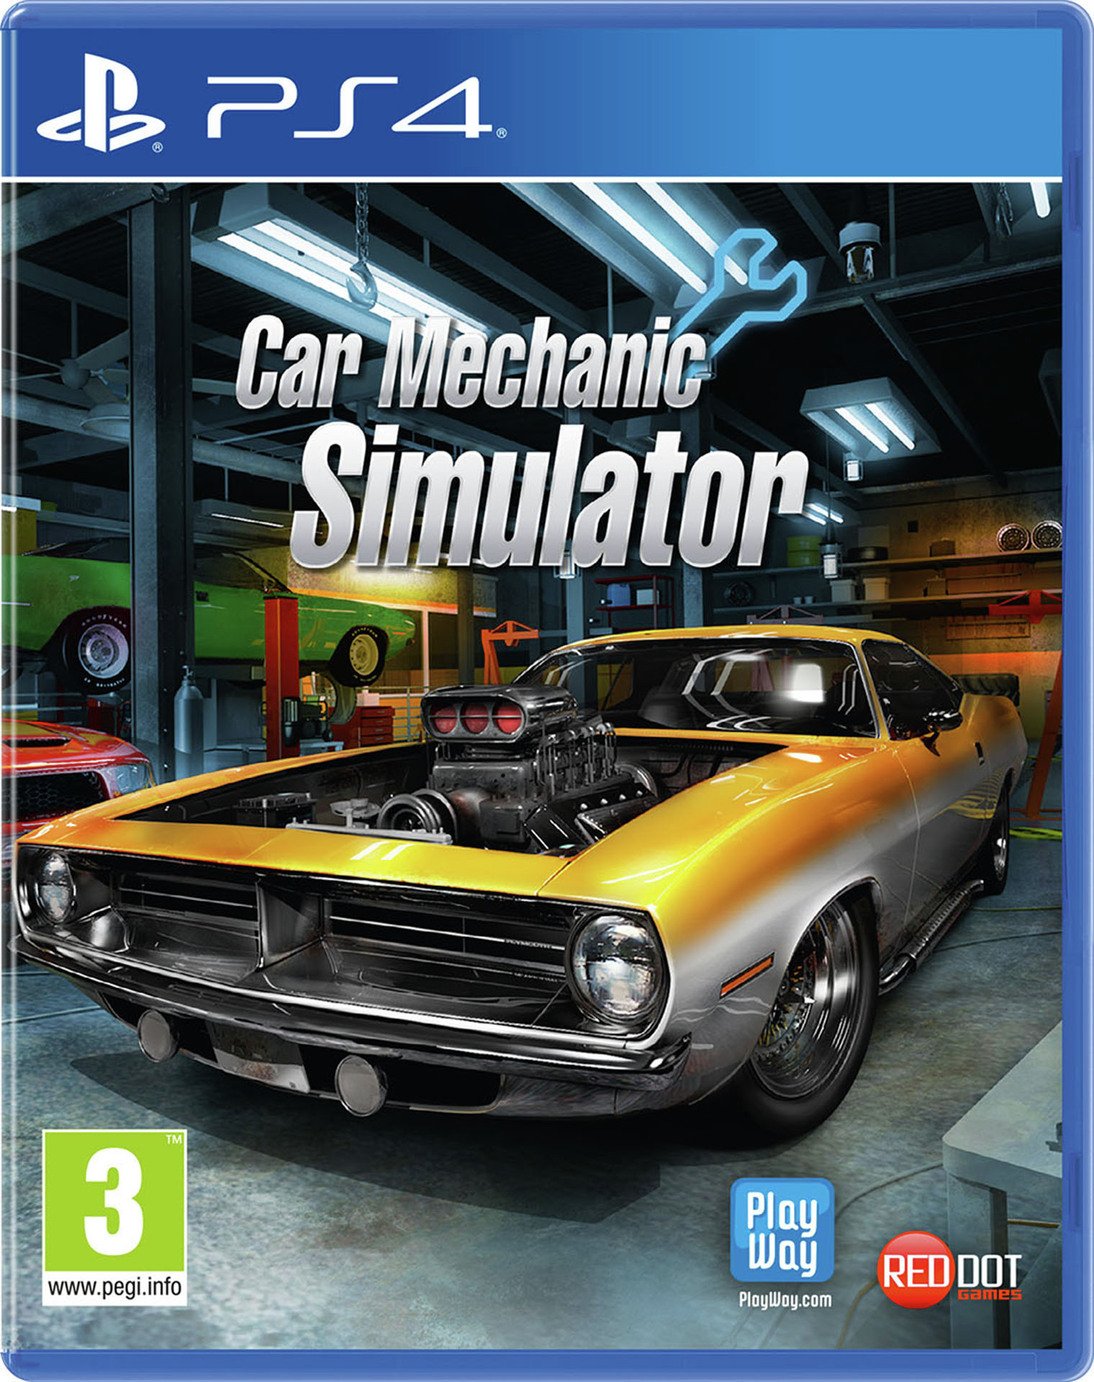 Car Mechanic Simulator PS4 Game Review